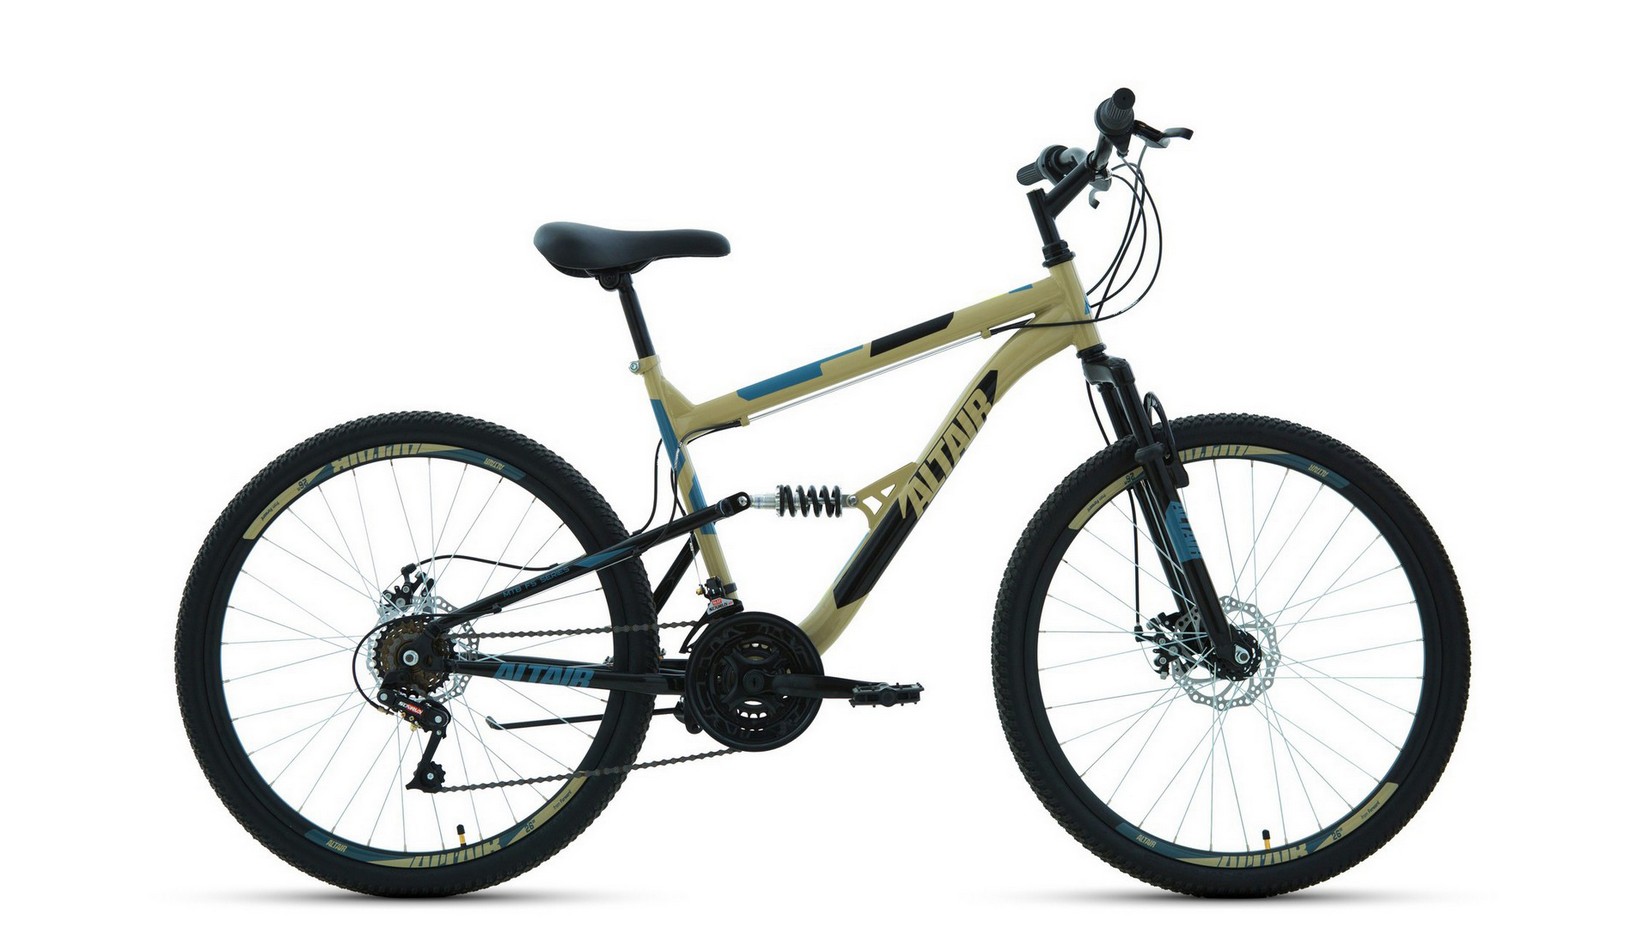 Велосипеды Двухподвесы Altair MTB FS 26 2.0 D, год 2022, цвет Серебристый-Оранжевый, ростовка 18